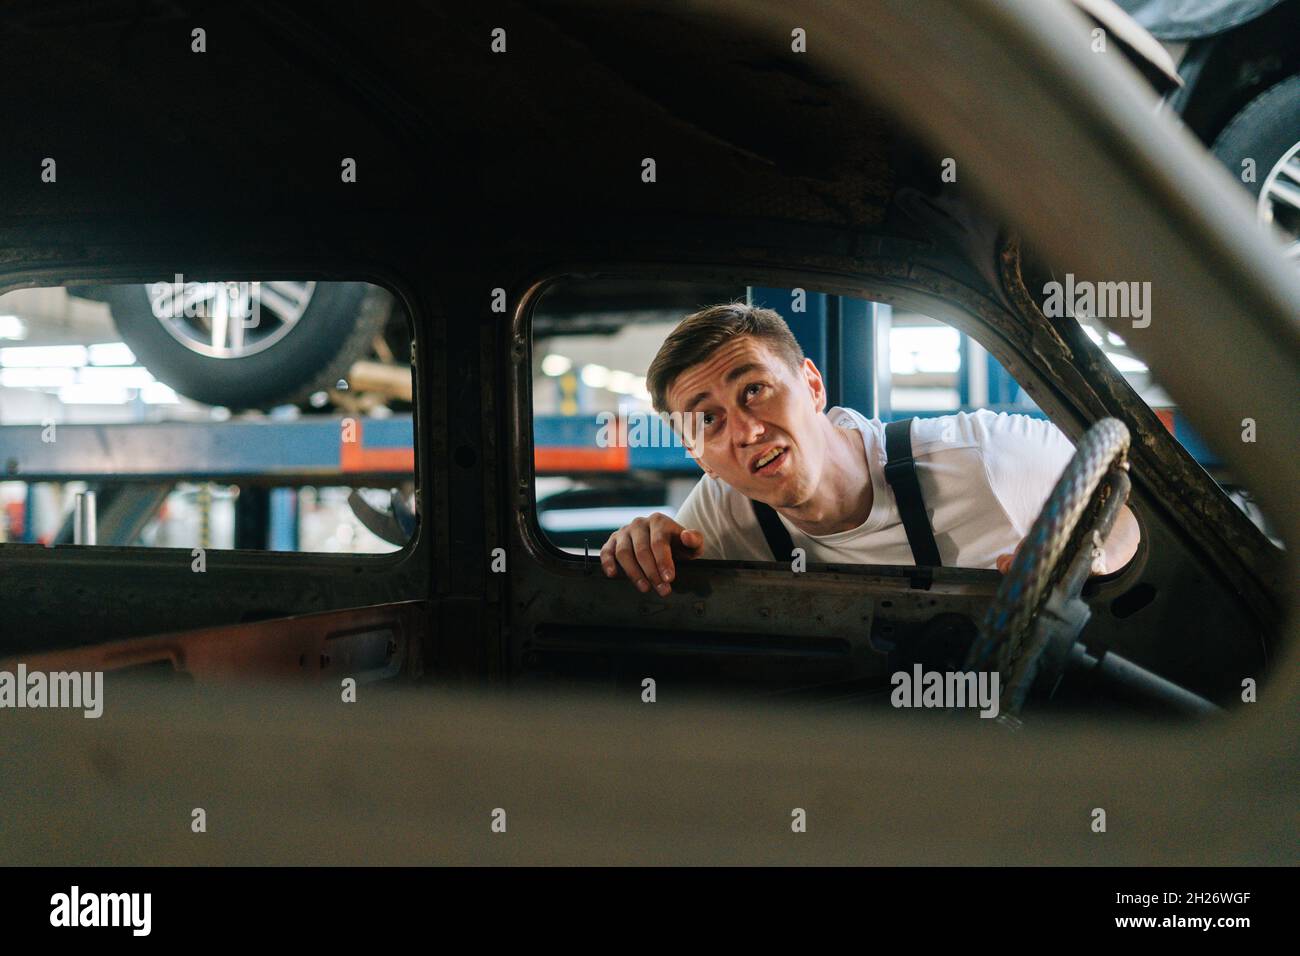 Vorderansicht des frustrierten jungen Service-Mannes in Uniform, der das Innere des alten Autos in der Autowerkstatt mit Fahrzeughintergrund inspiziert. Stockfoto